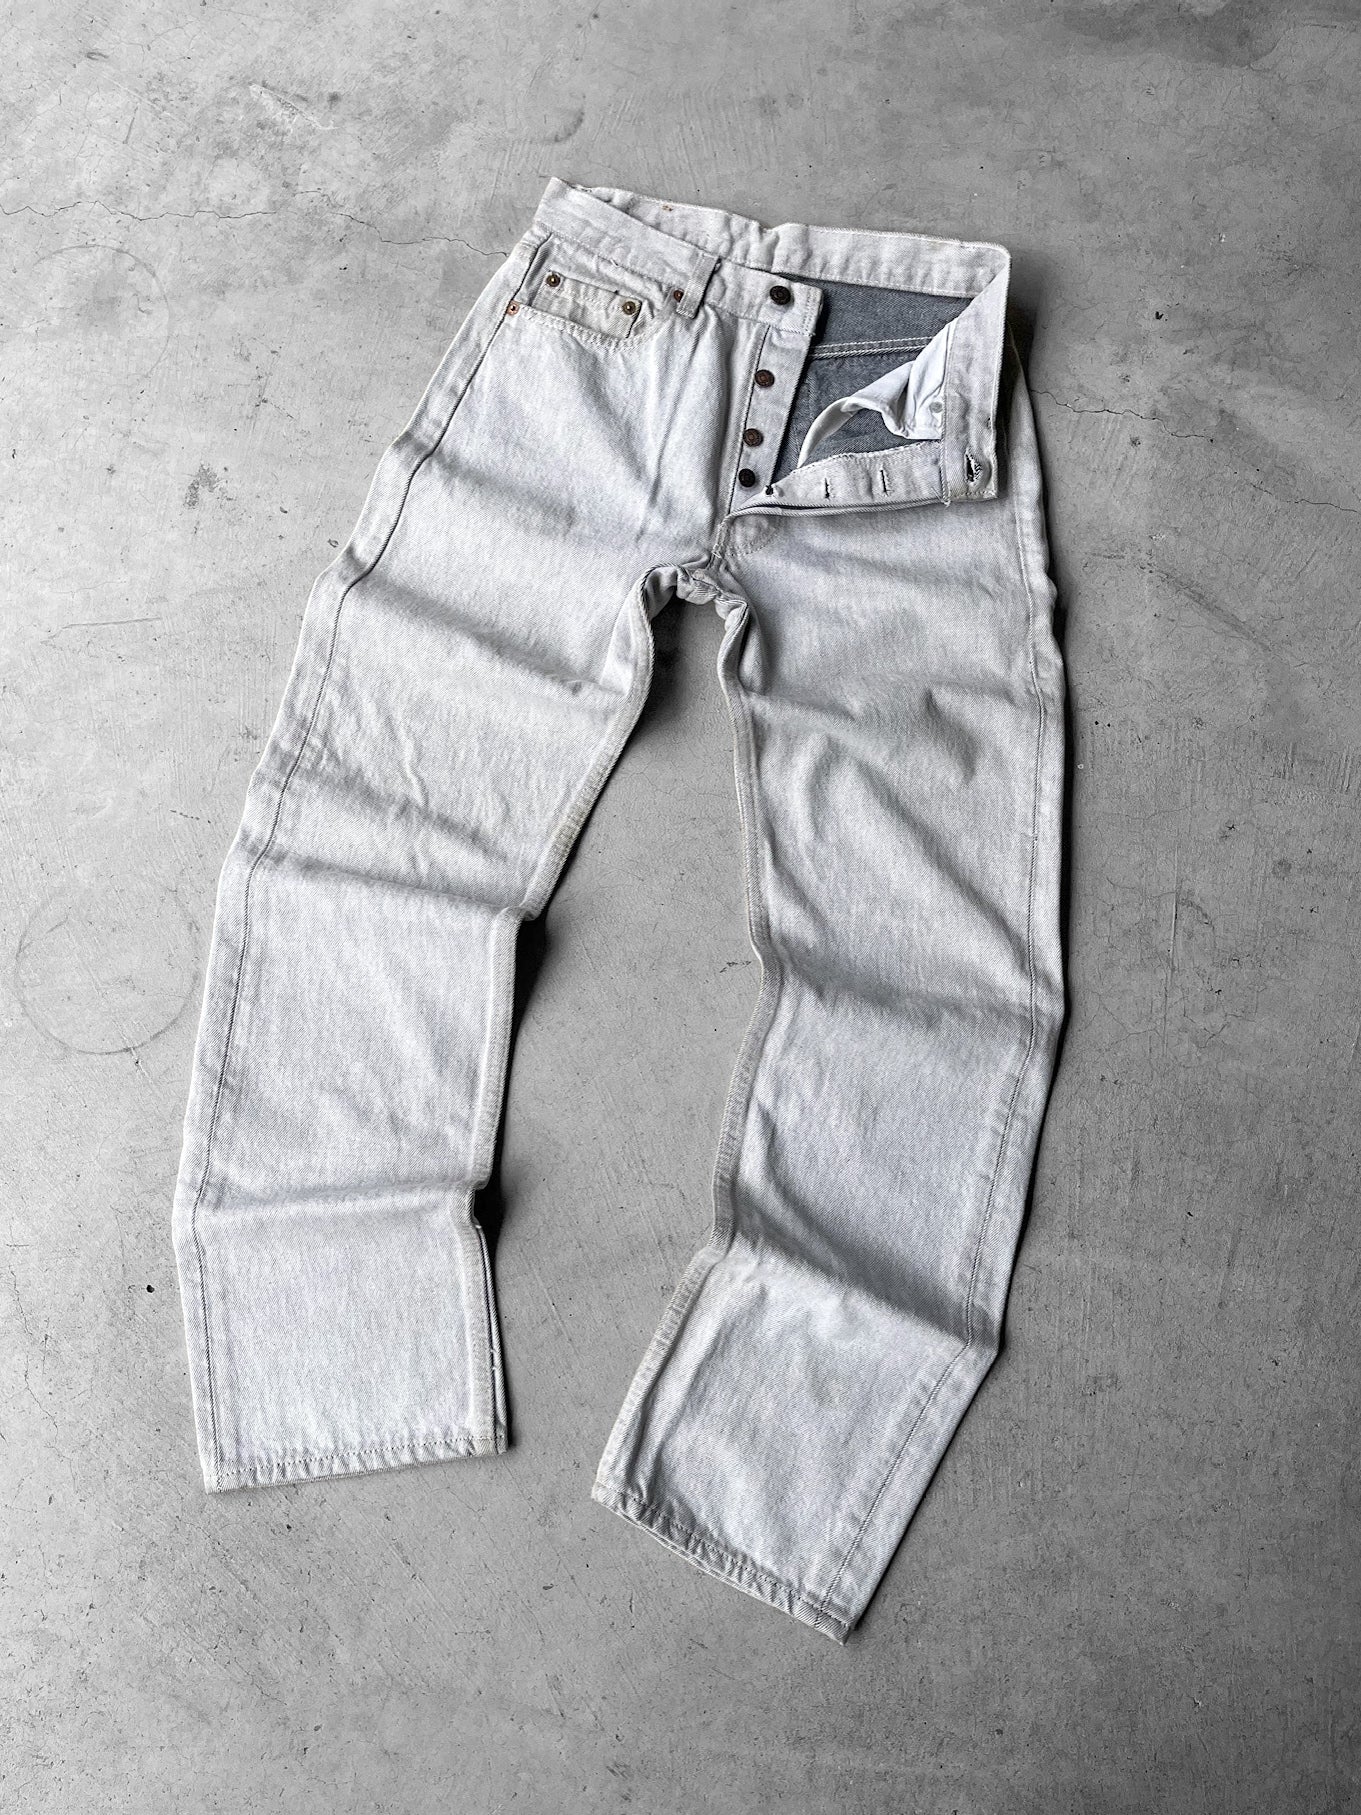 Levi's 501 Jeans - 29 x 32